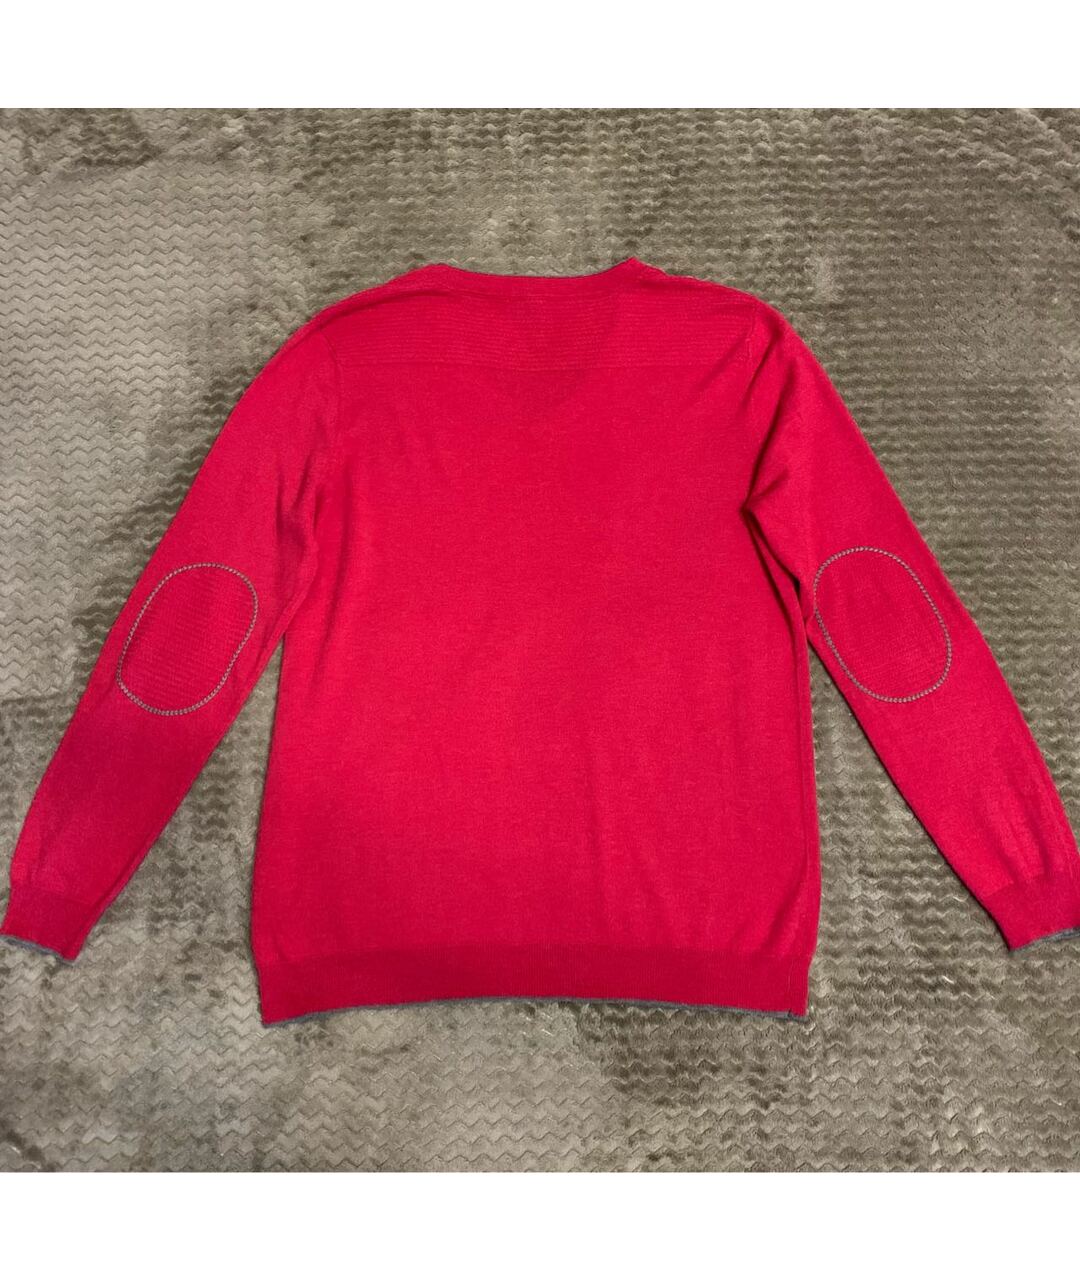 HUGO BOSS Розовый шерстяной джемпер / свитер, фото 2